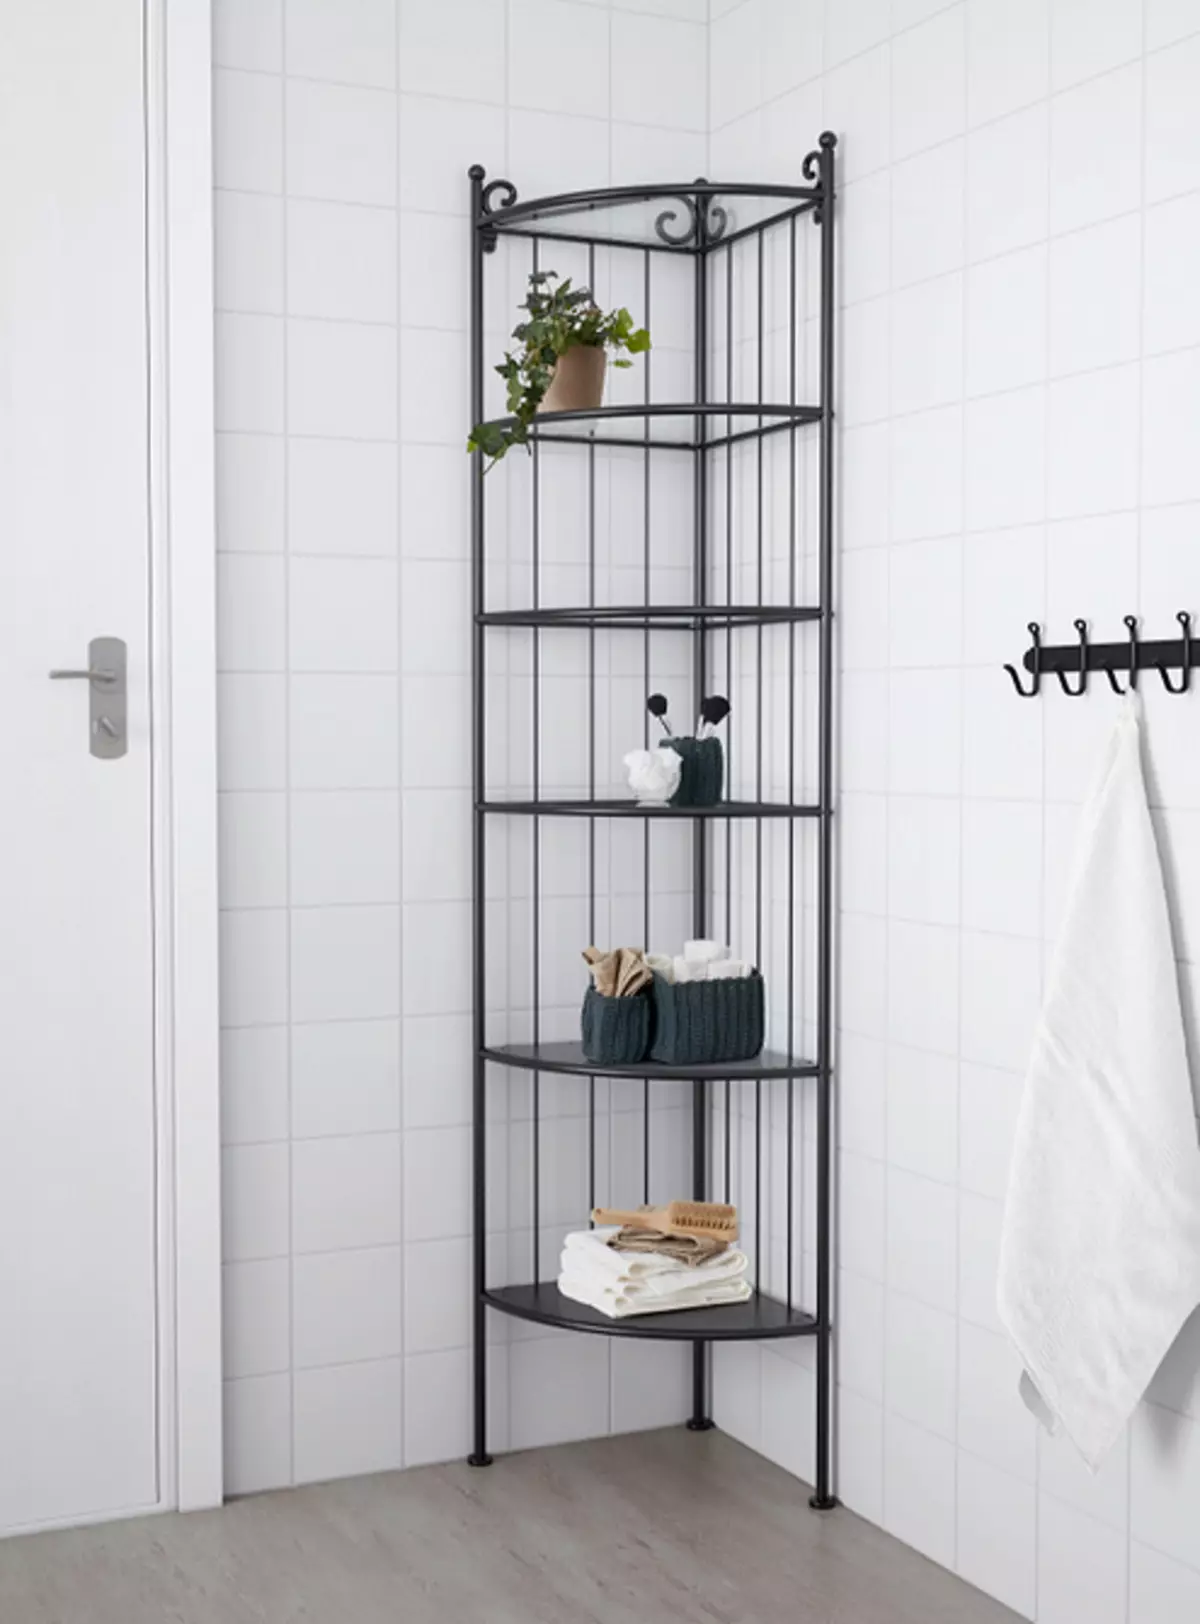 ရေချိုးခန်းသေးသေးလေးတစ်ခုအတွက် IKEA - သင်ကြိုက်နှစ်သက်သည့်ပစ္စည်း 6 ခု 6586_30